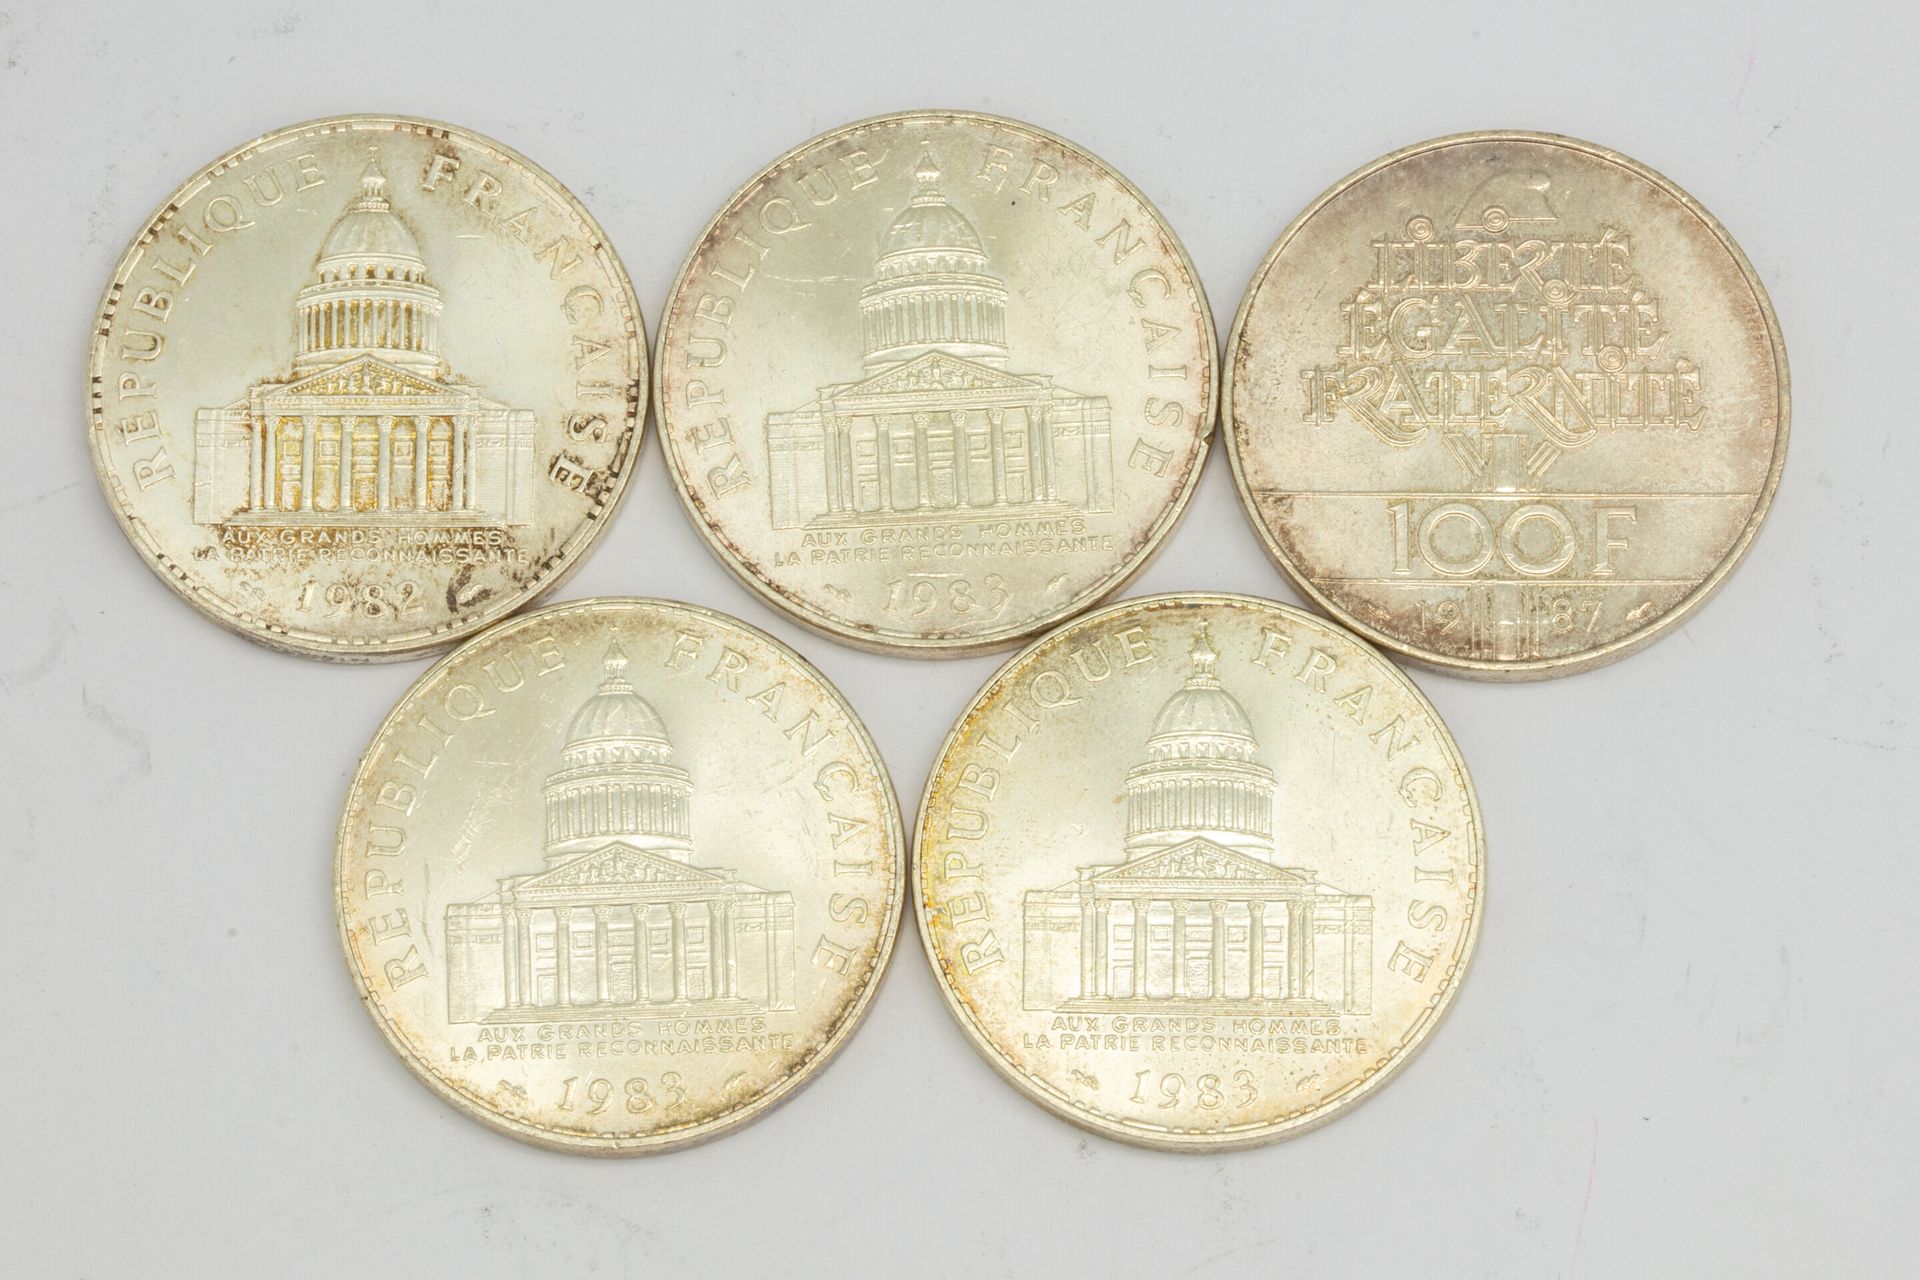 Null Set di 5 monete commemorative da 100 franchi 1983,1987,1982
Peso: 75,3 g